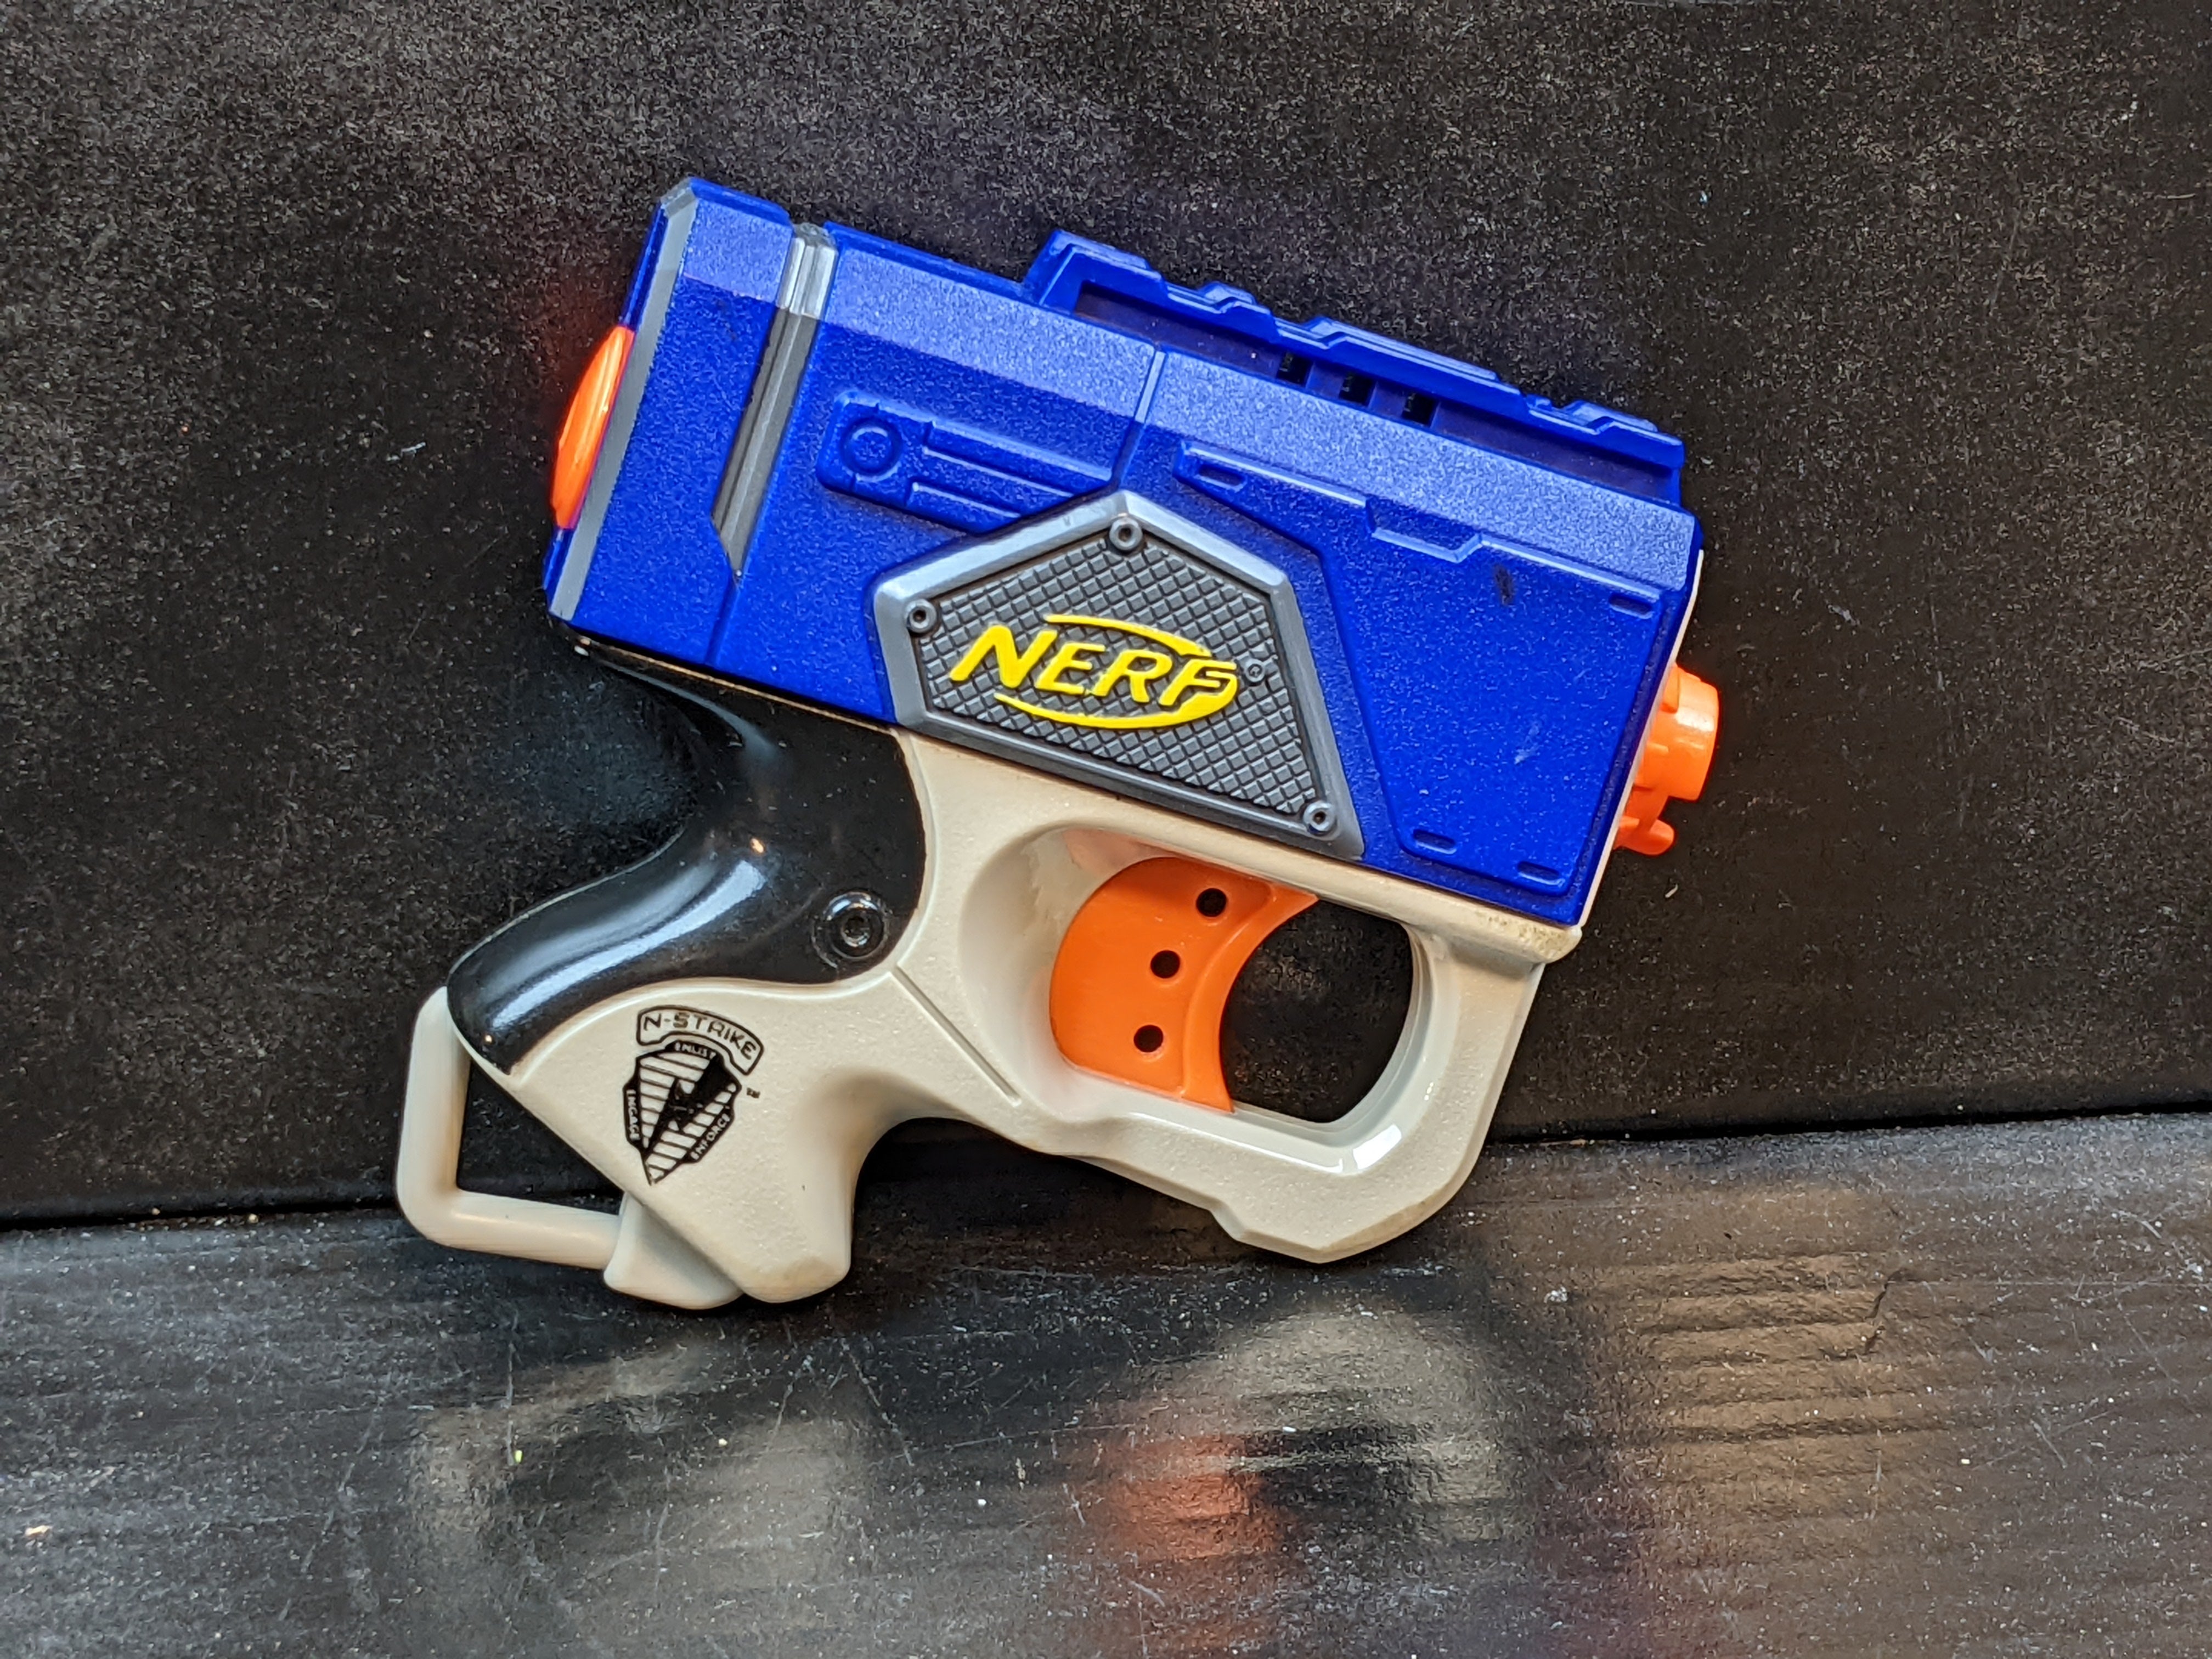 Nerf Elite - Reflex IX-1, Toys R' Us